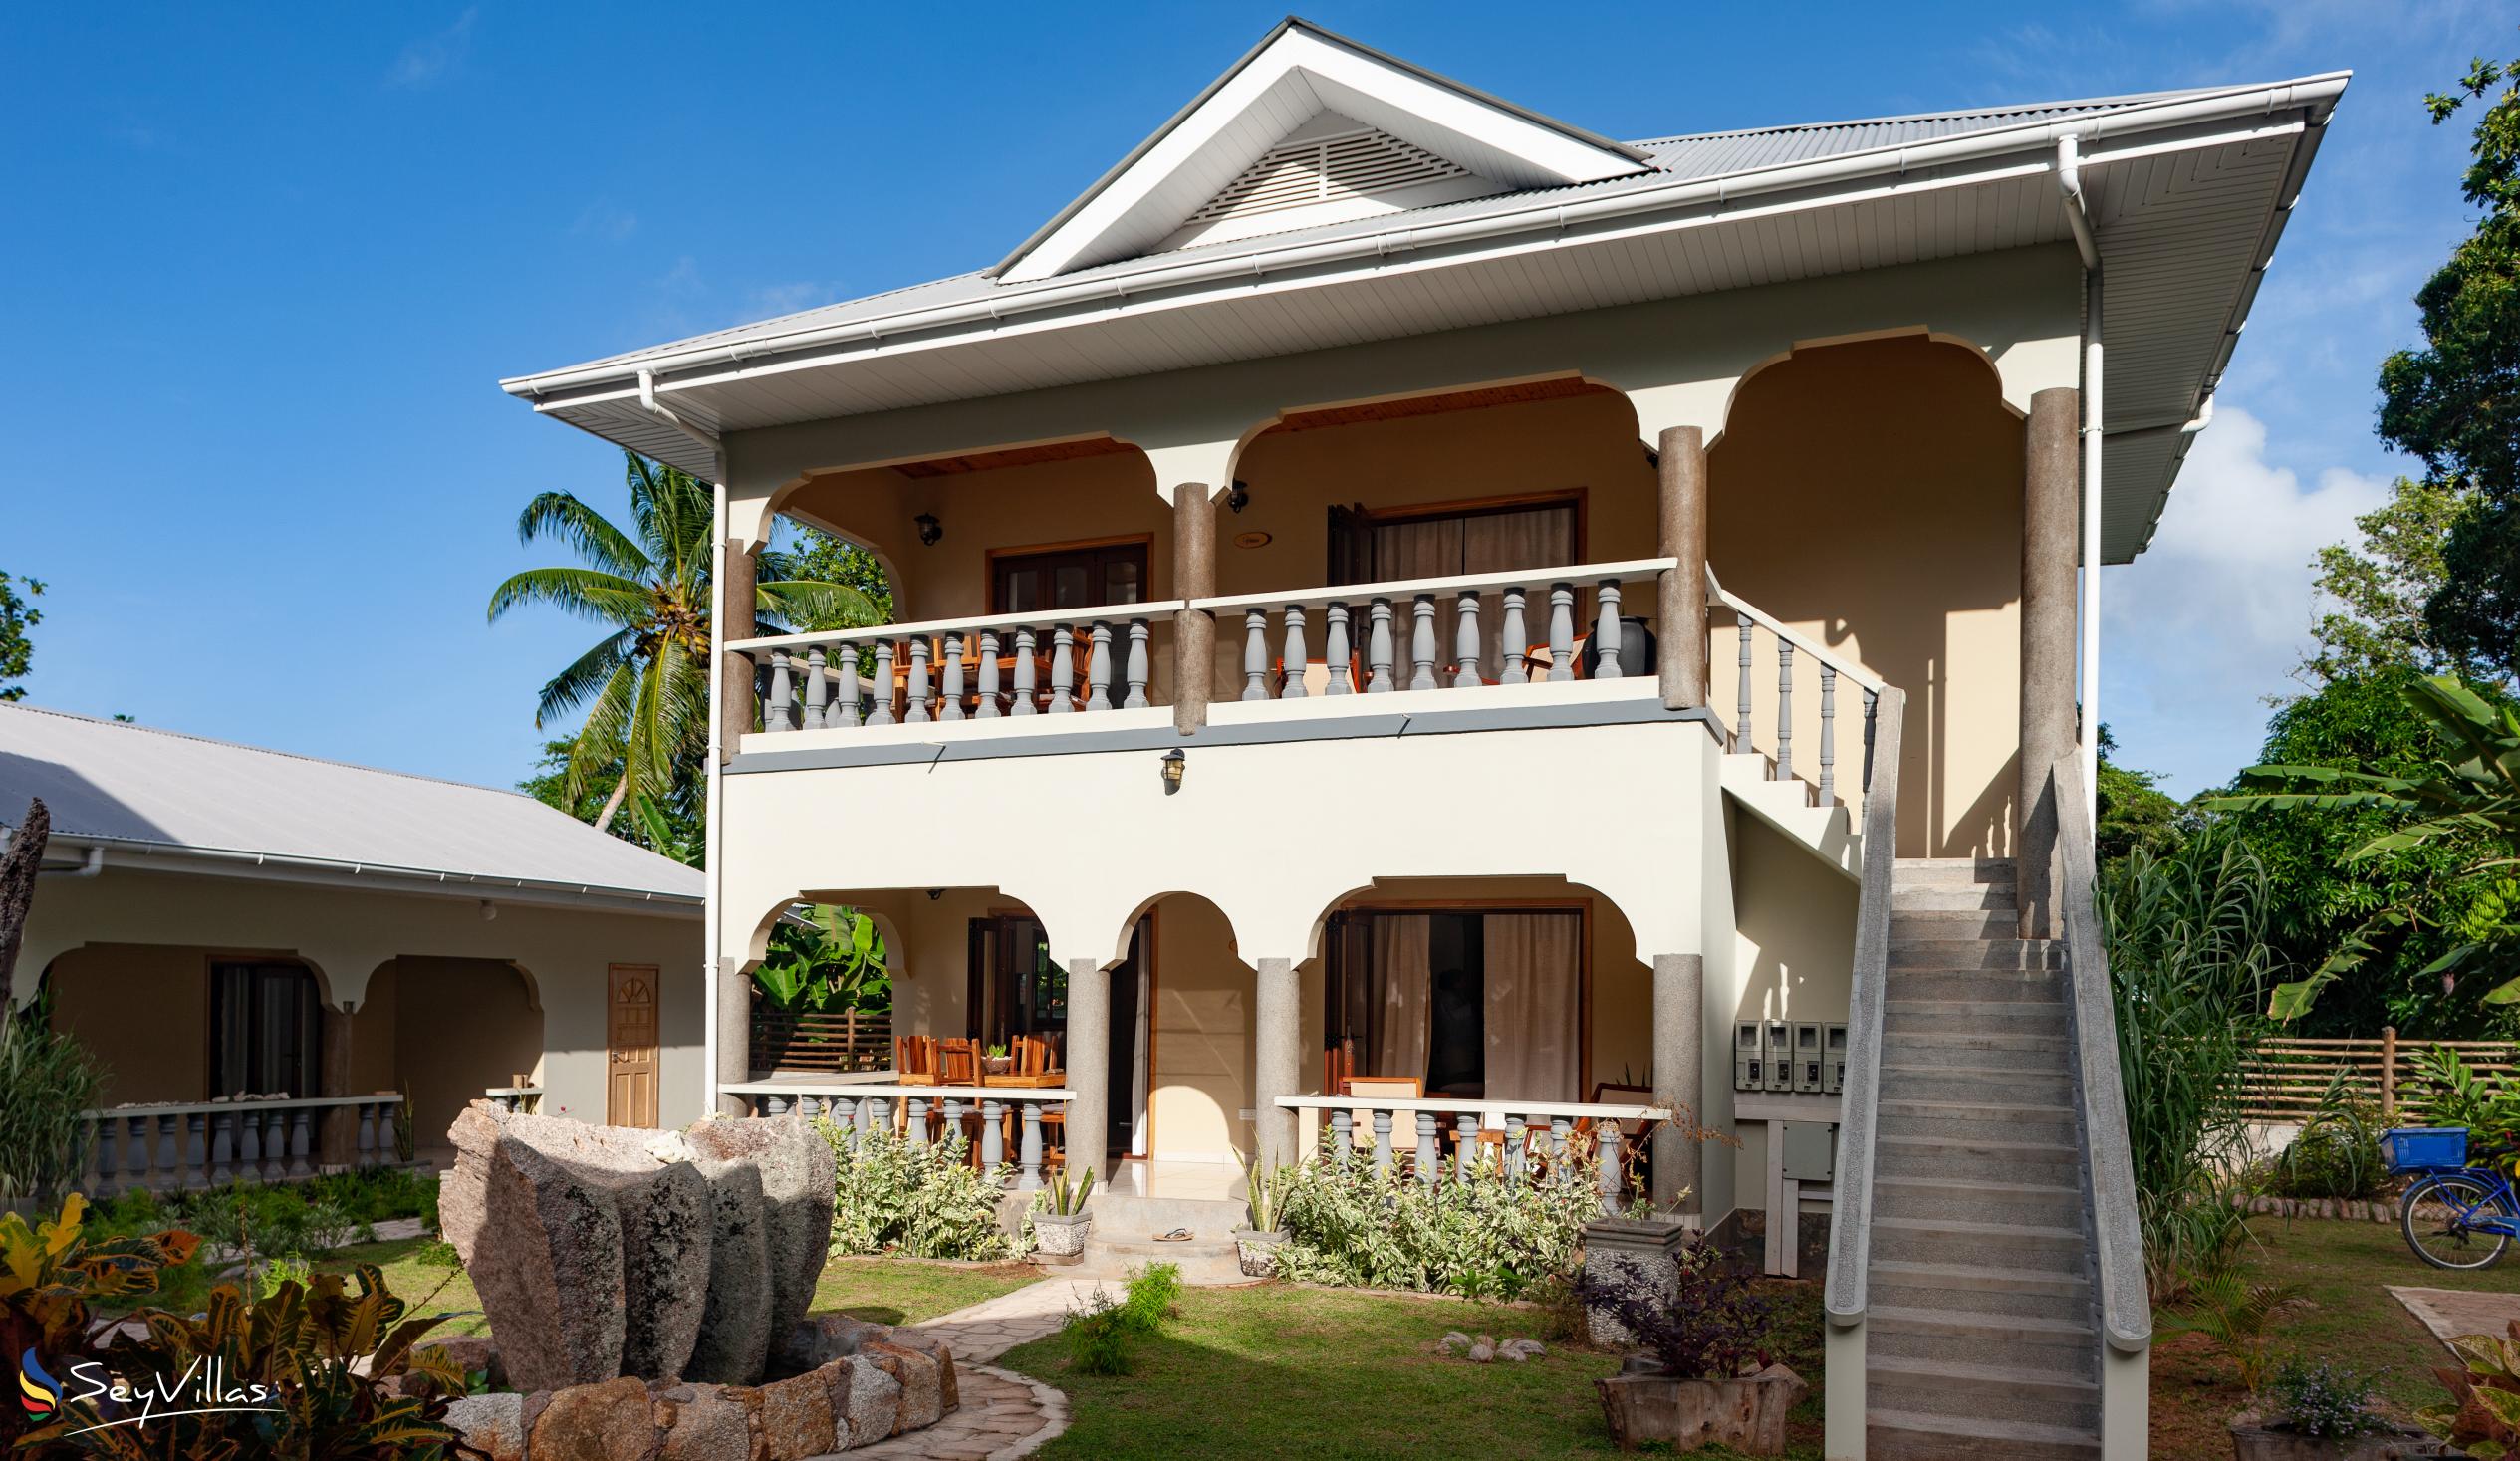 Photo 9: Maison Ed-Elle - Outdoor area - La Digue (Seychelles)